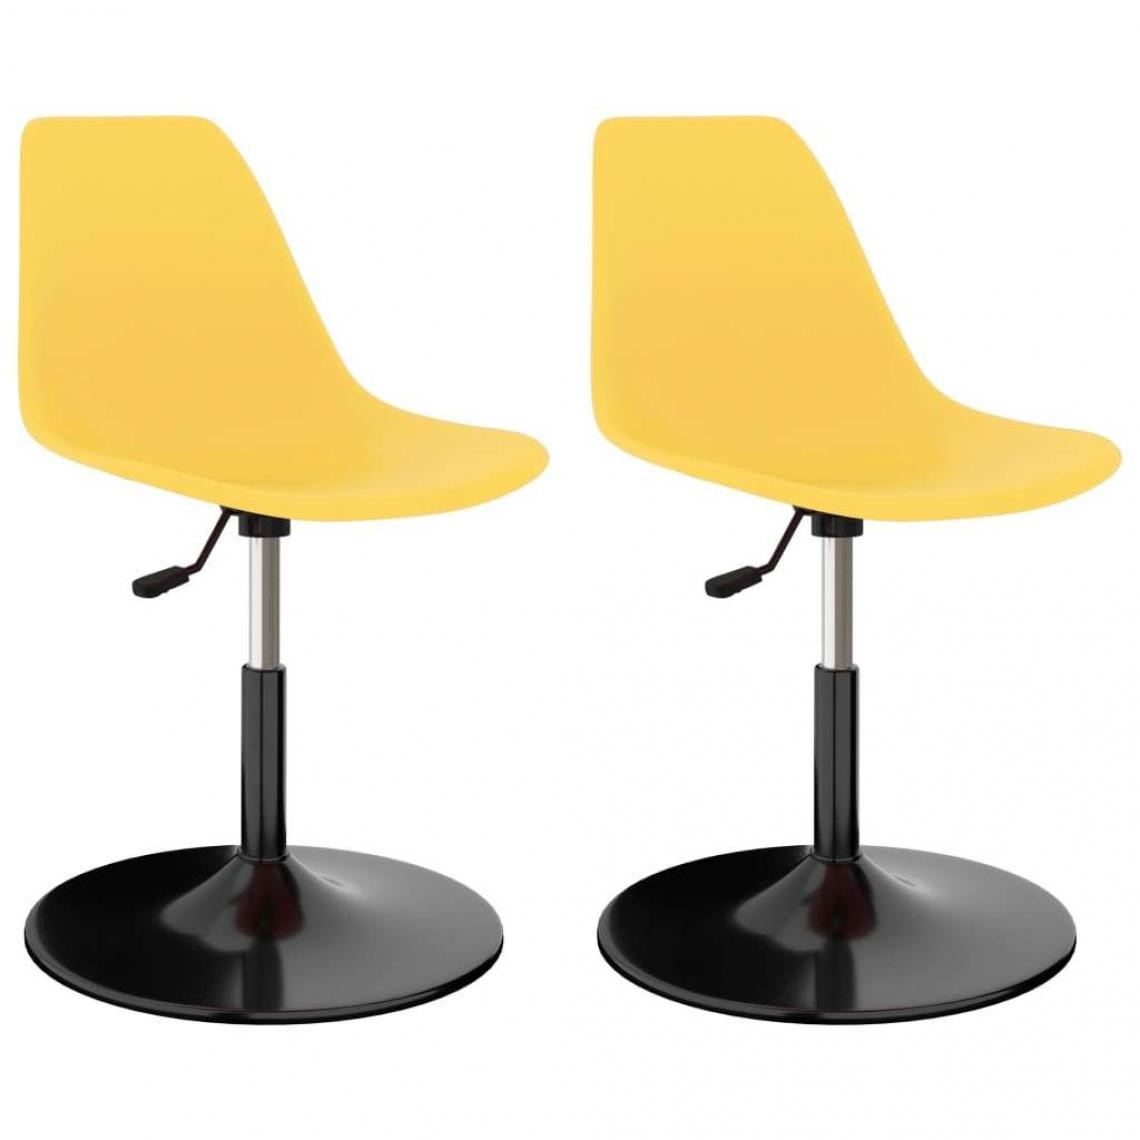 Decoshop26 - Lot de 2 chaises de salle à manger cuisine pivotantes design moderne PP jaune CDS020915 - Chaises